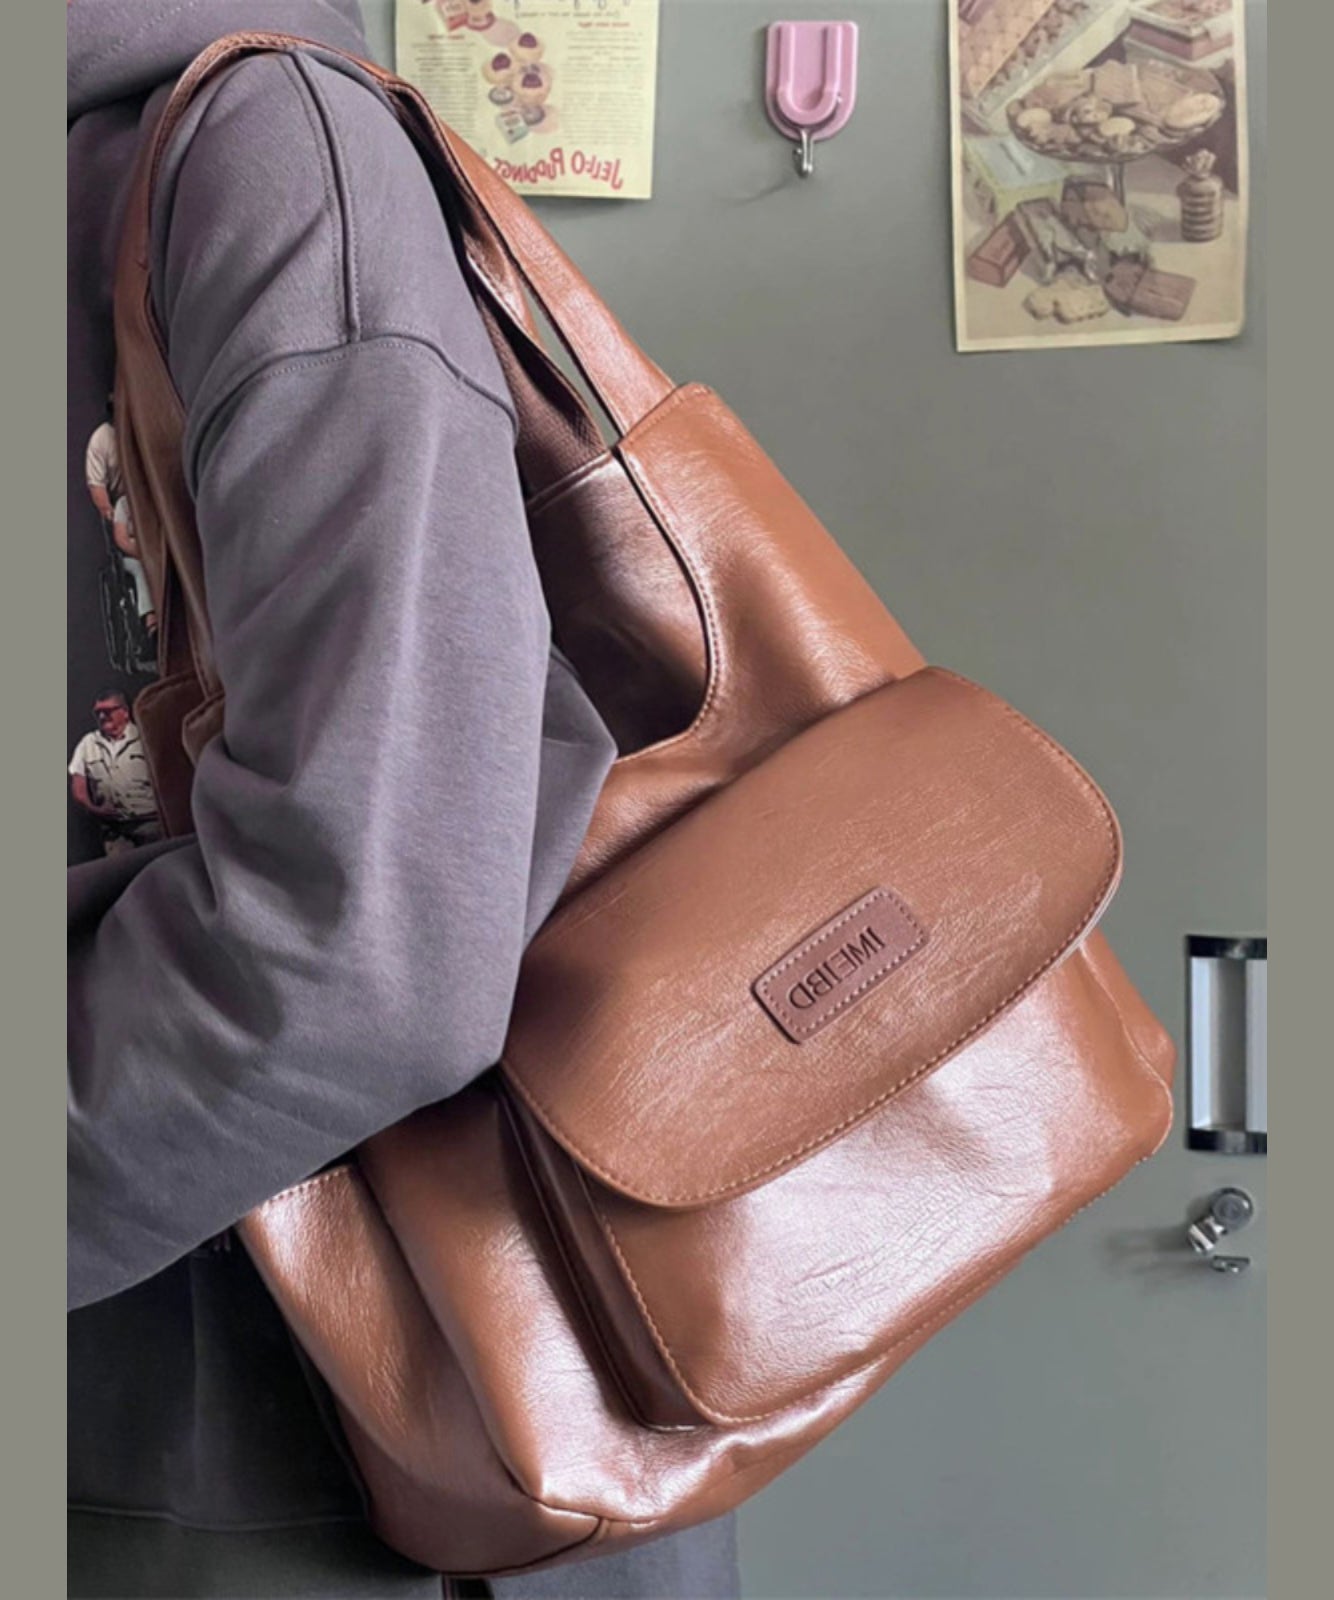 Retro Versatile Brown Large Capacity Faux Leather Satchel Handbag SX1007